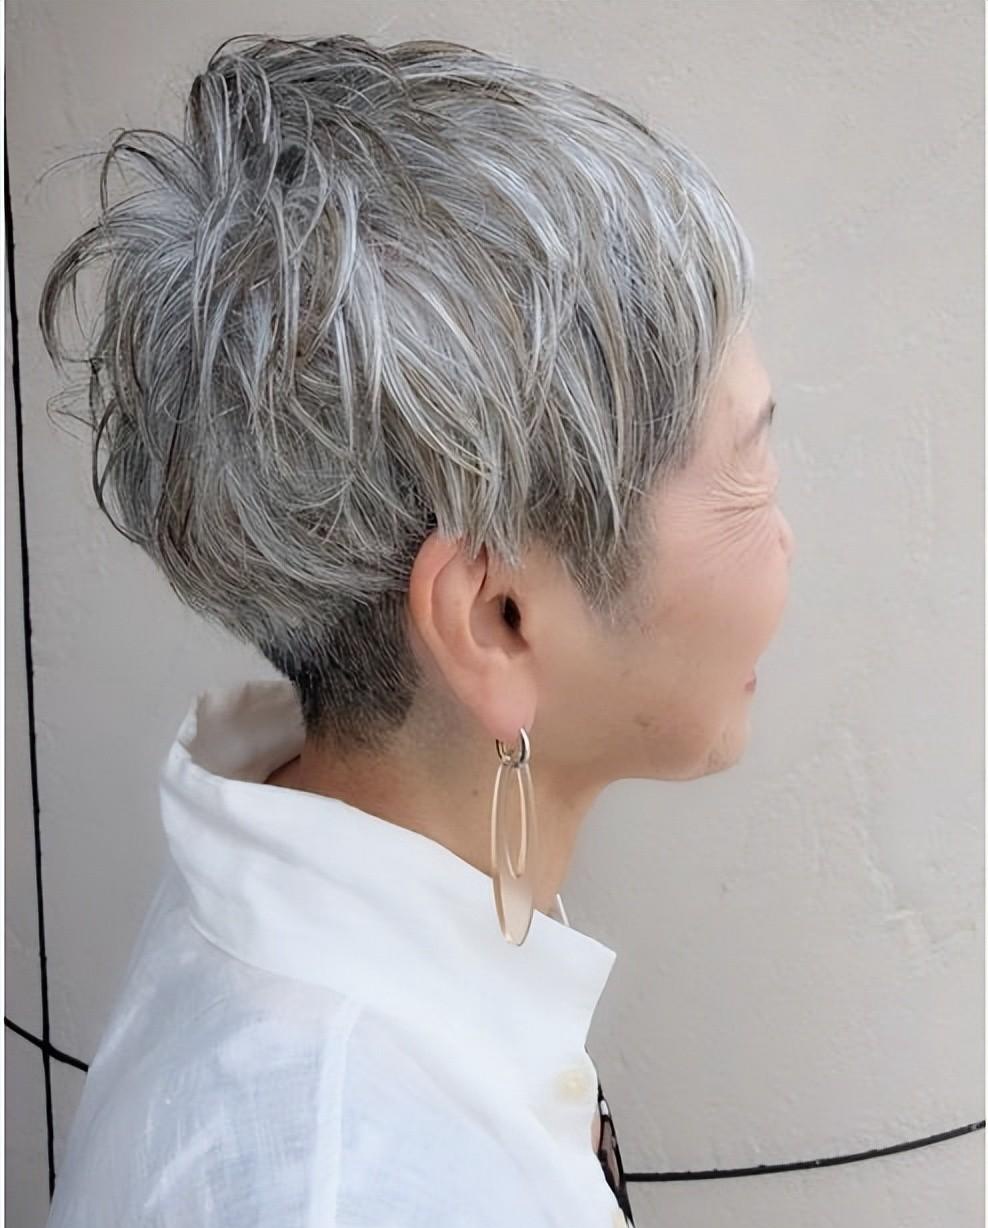 60到80岁的女性,头发花白发型这样剪,利落时尚显气质